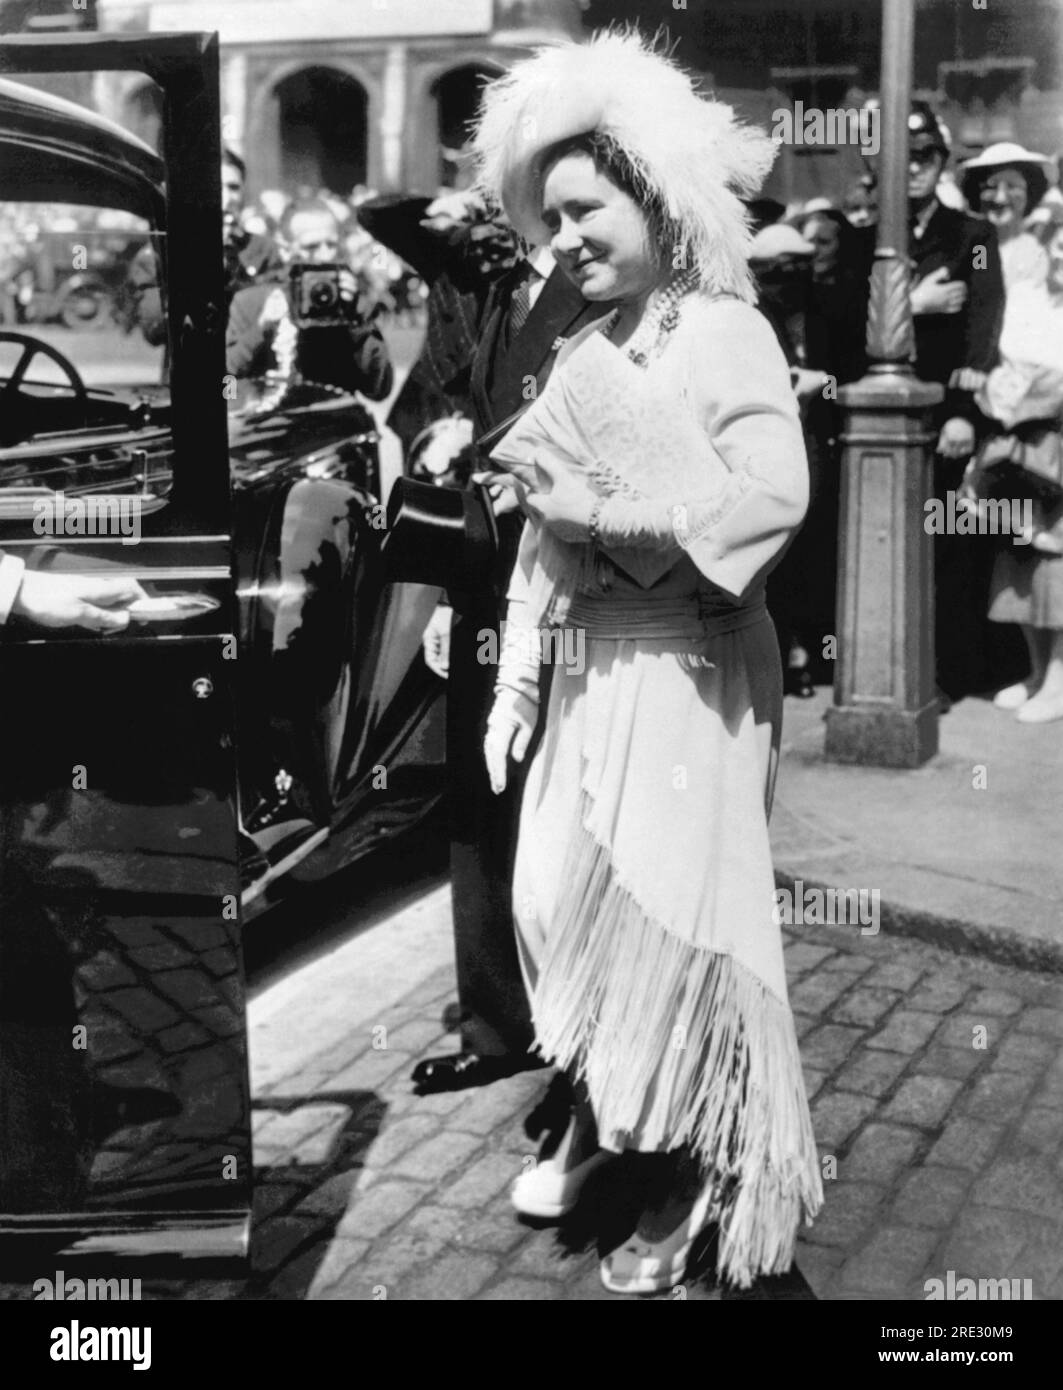 Londra, Inghilterra: 29 luglio 1950 la regina Elisabetta lascia un servizio commemorativo all'Abbazia di Westminster per i poliziotti metropolitani uccisi nelle due guerre mondiali. Indossa un cappello con la spina di struzzo, una serie di perle, un abito con frange di seta e scarpe con plateau. Foto Stock